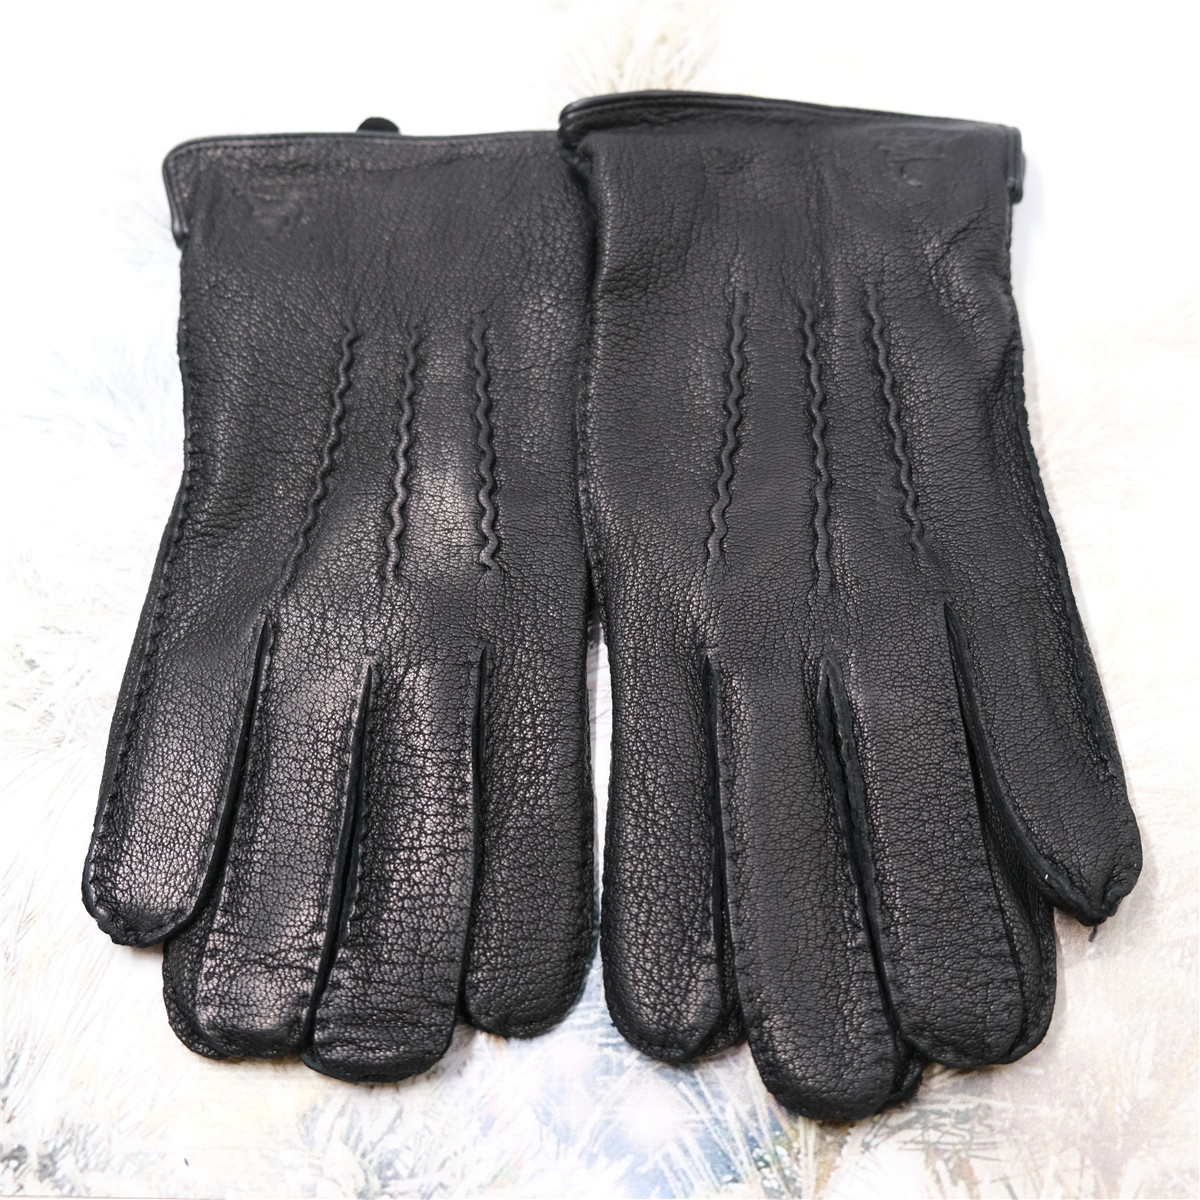  Перчатки Hammon Moda Перчатки мужские ручное шитье X-003 Perchatki124 являющийся официальным дистрибьютором в России 